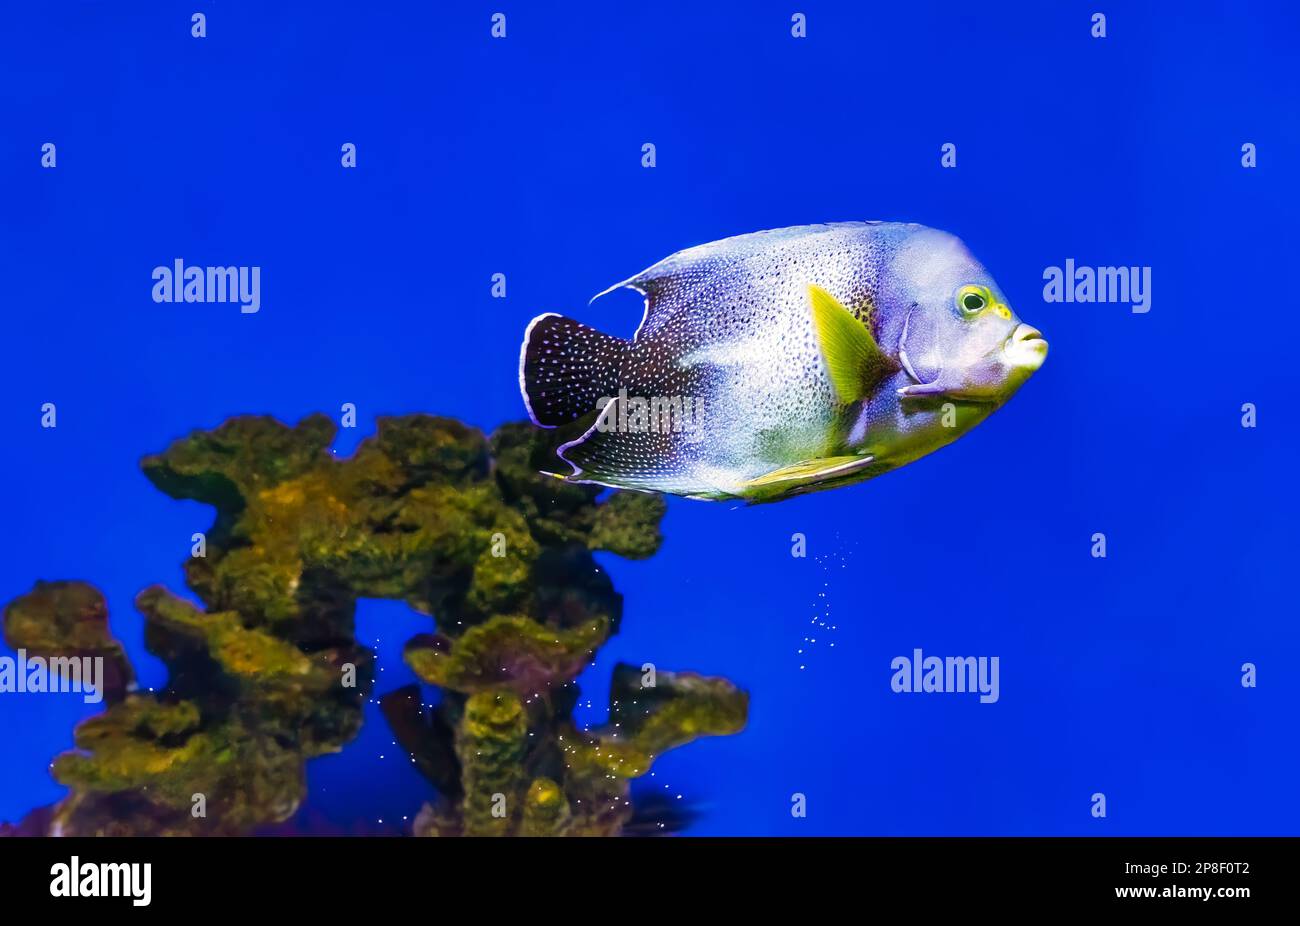 Magnifique poisson bleu nageant dans l'aquarium, Pomacanthus semicirratus, poisson-ange semi-cercle, poisson-ange Coran. Poissons tropicaux sur le fond de l'AQ Banque D'Images